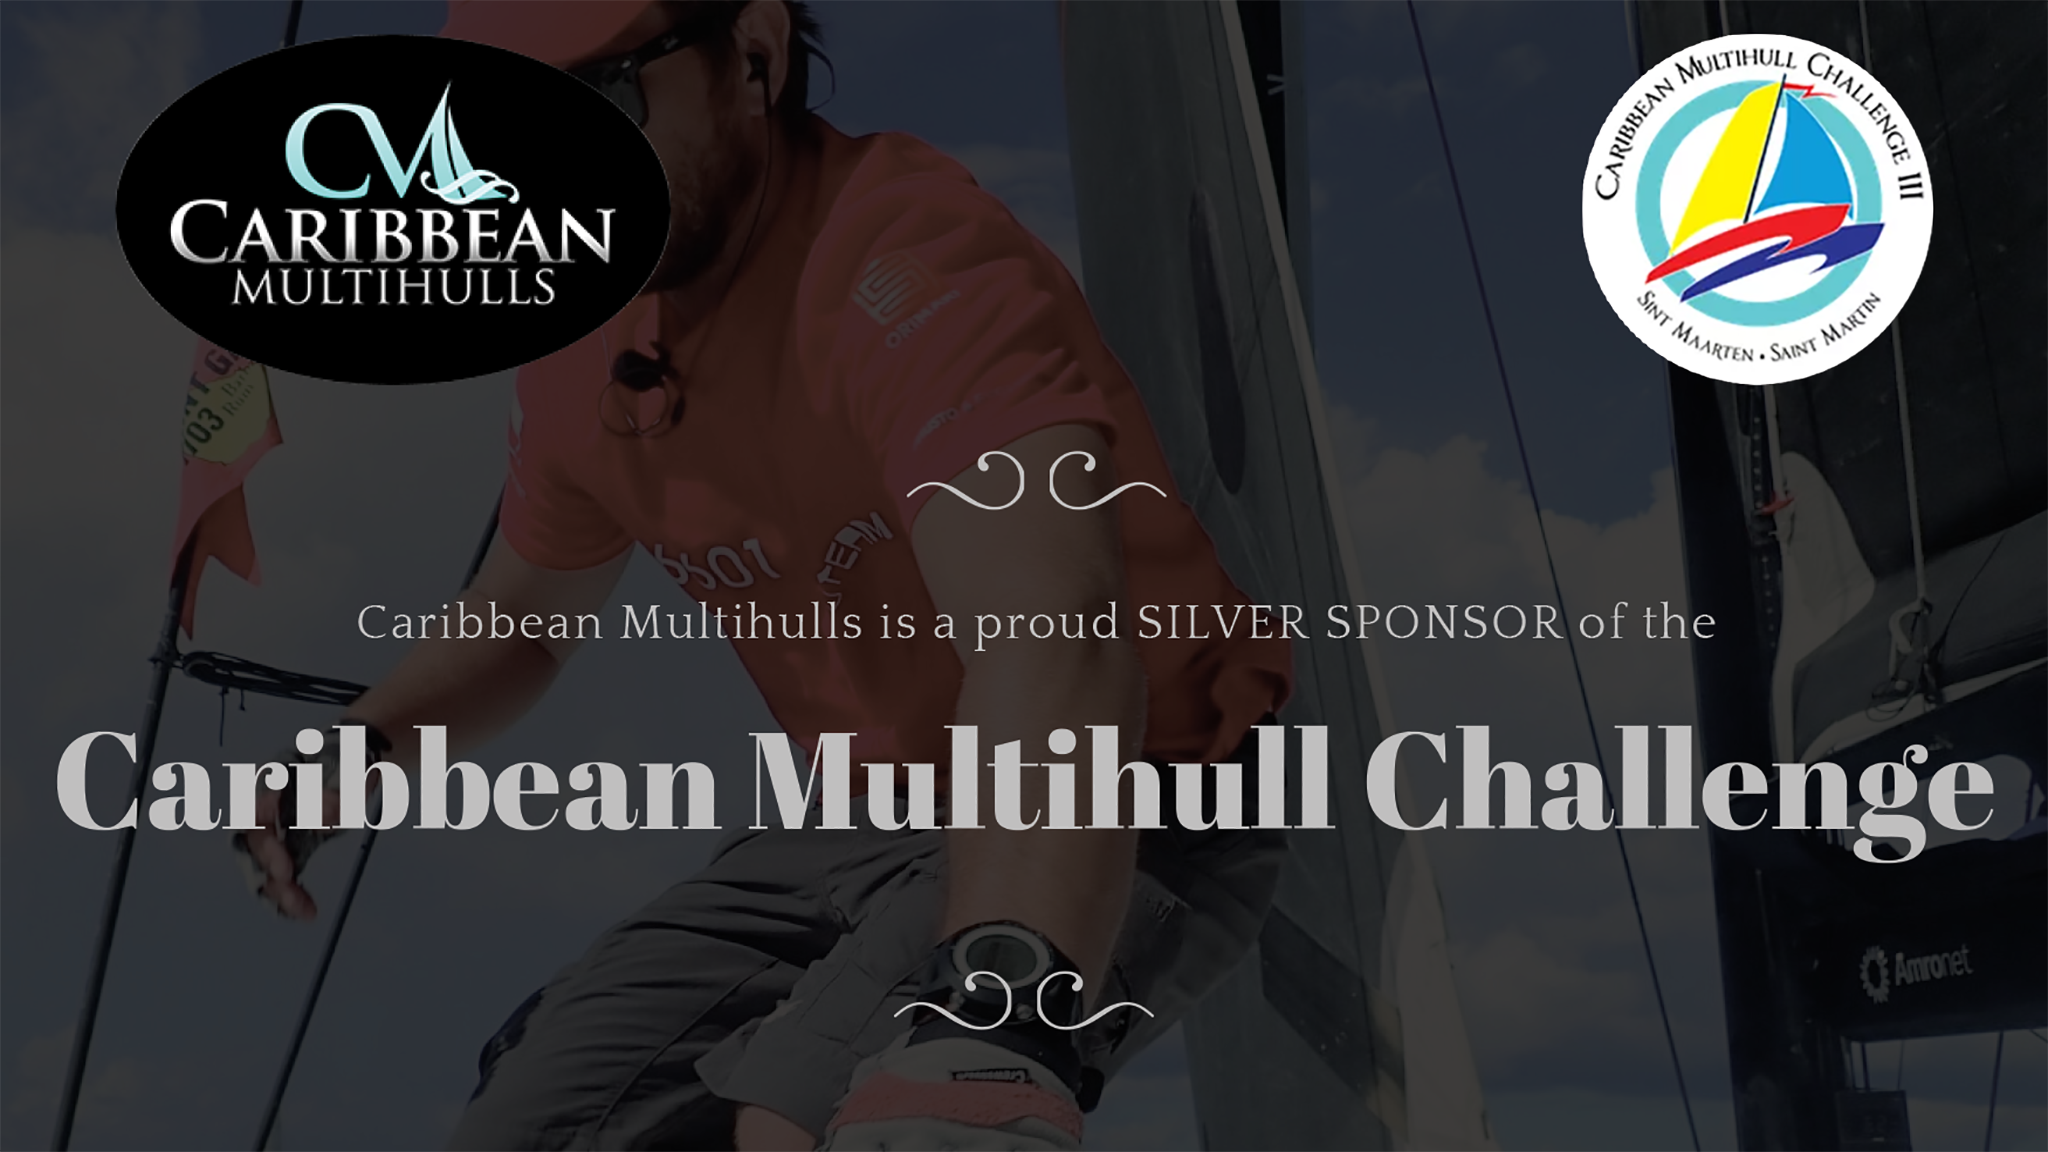 Caribbean Multihull Challenge 2021 - CMC III regatta in Sint Maarten